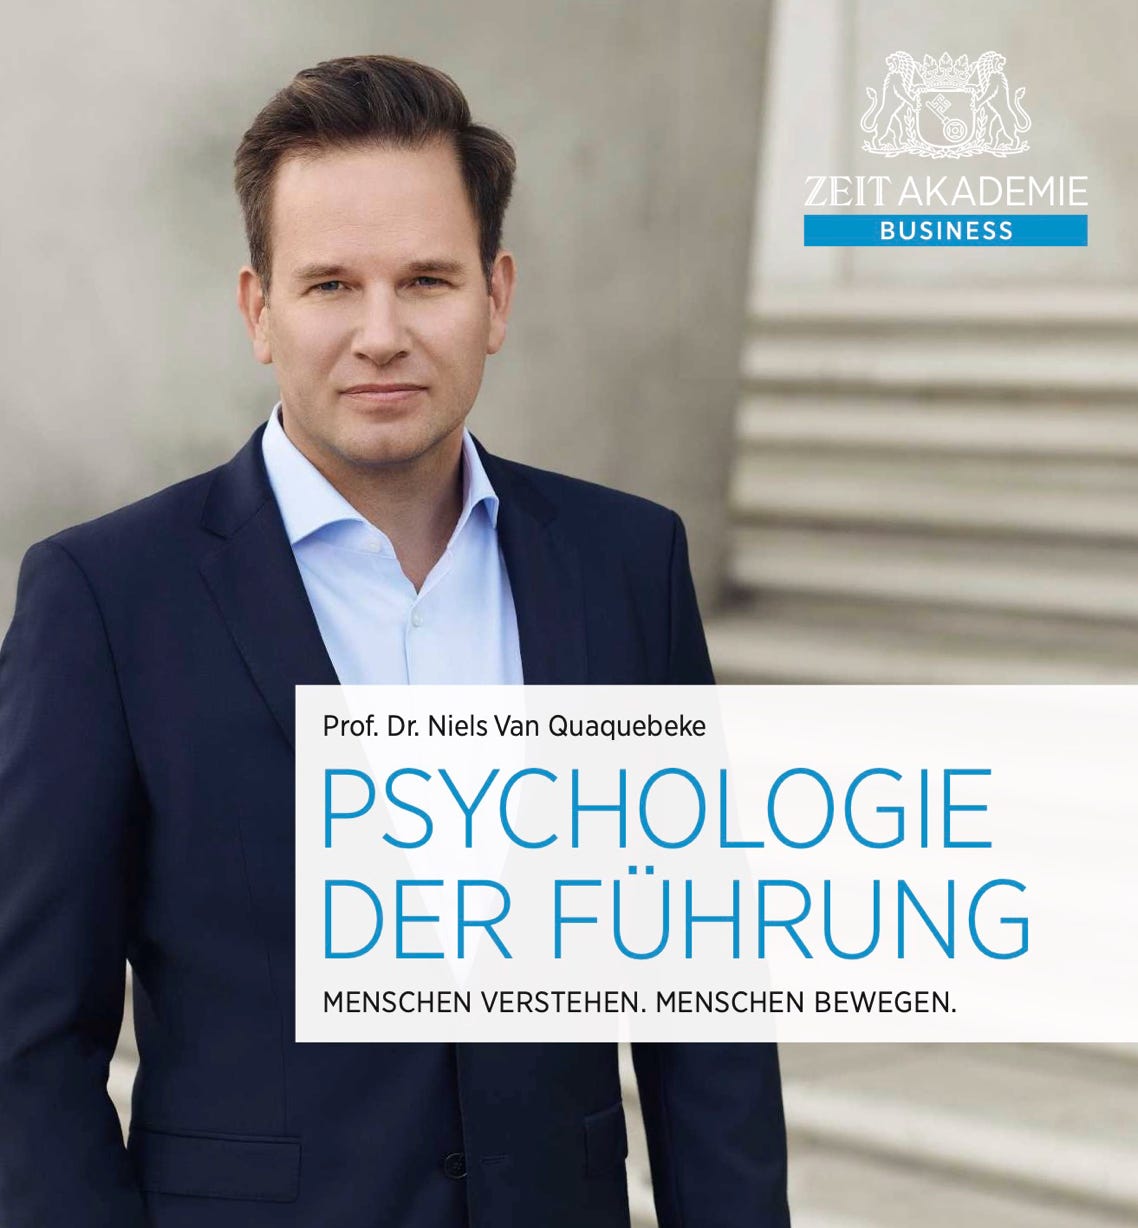 Buchtitelbild von Psychologie der Führung von Prof. Dr. Niels Van Quaquebeke